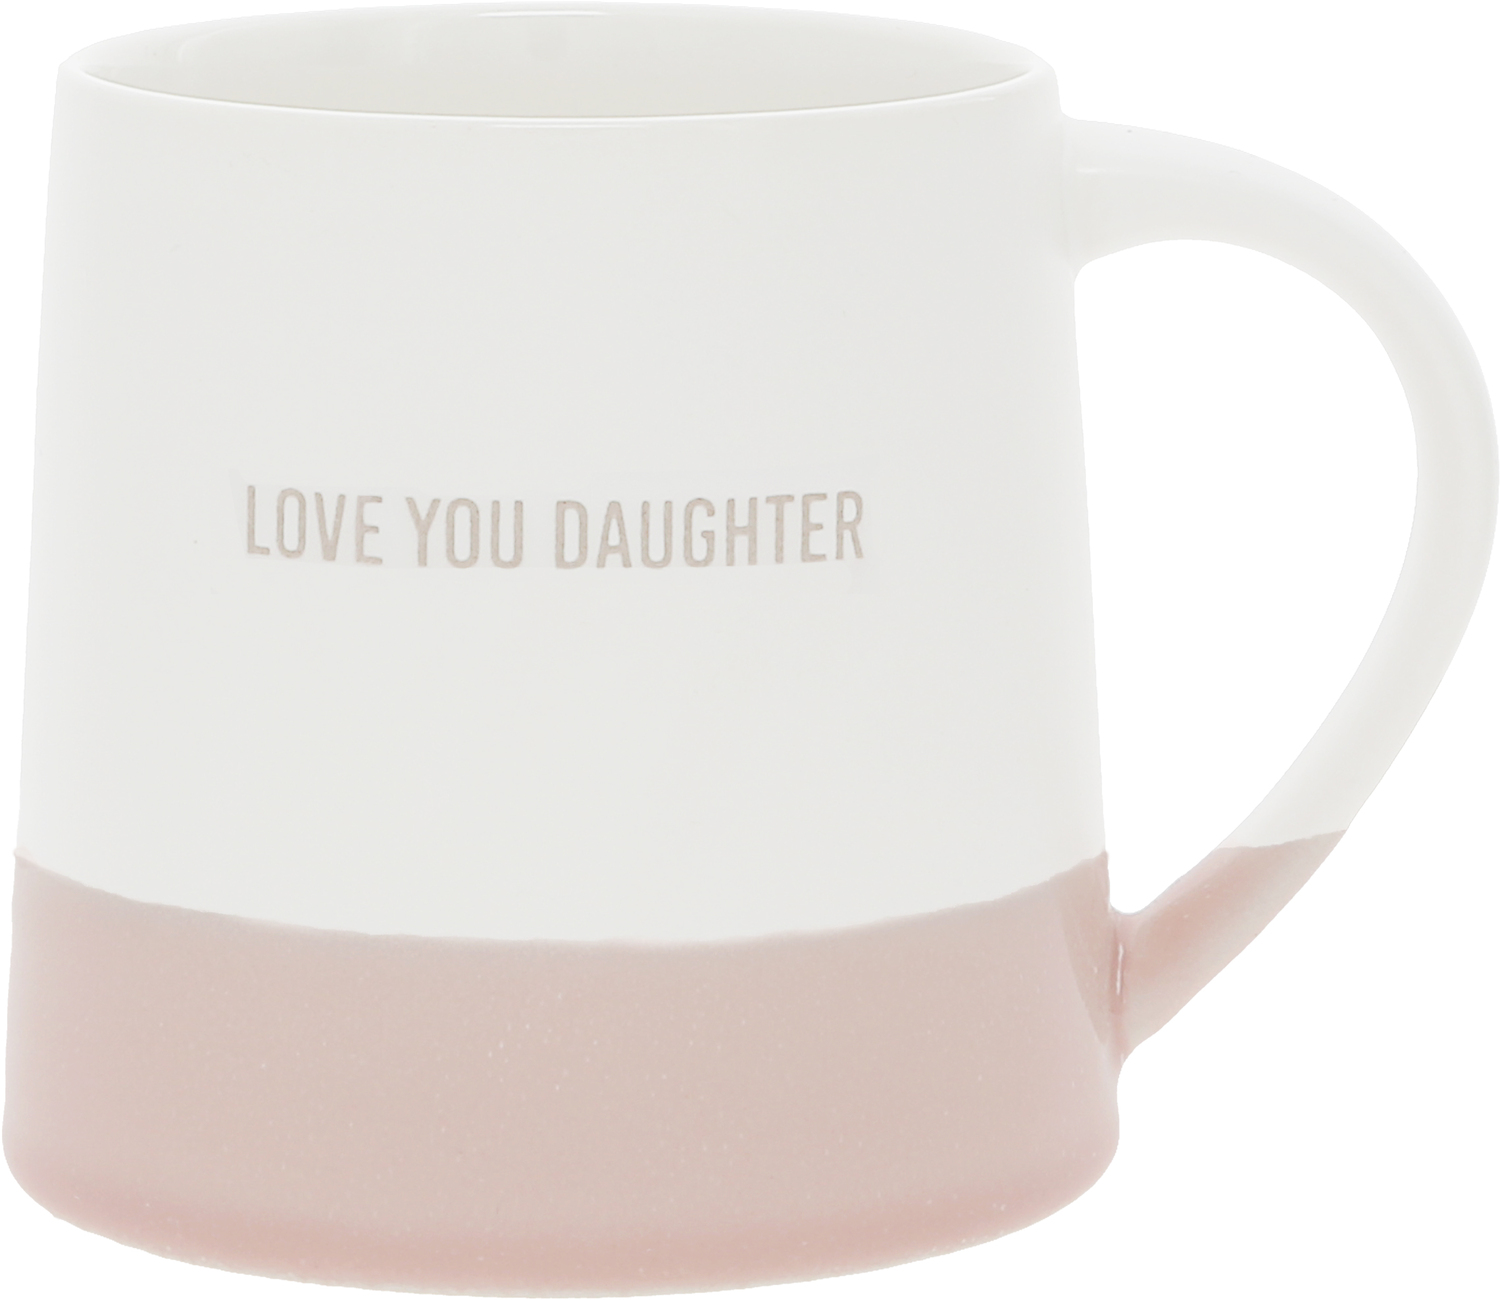 Love You Daughter by Love You - Love You Daughter - 17 oz Mug